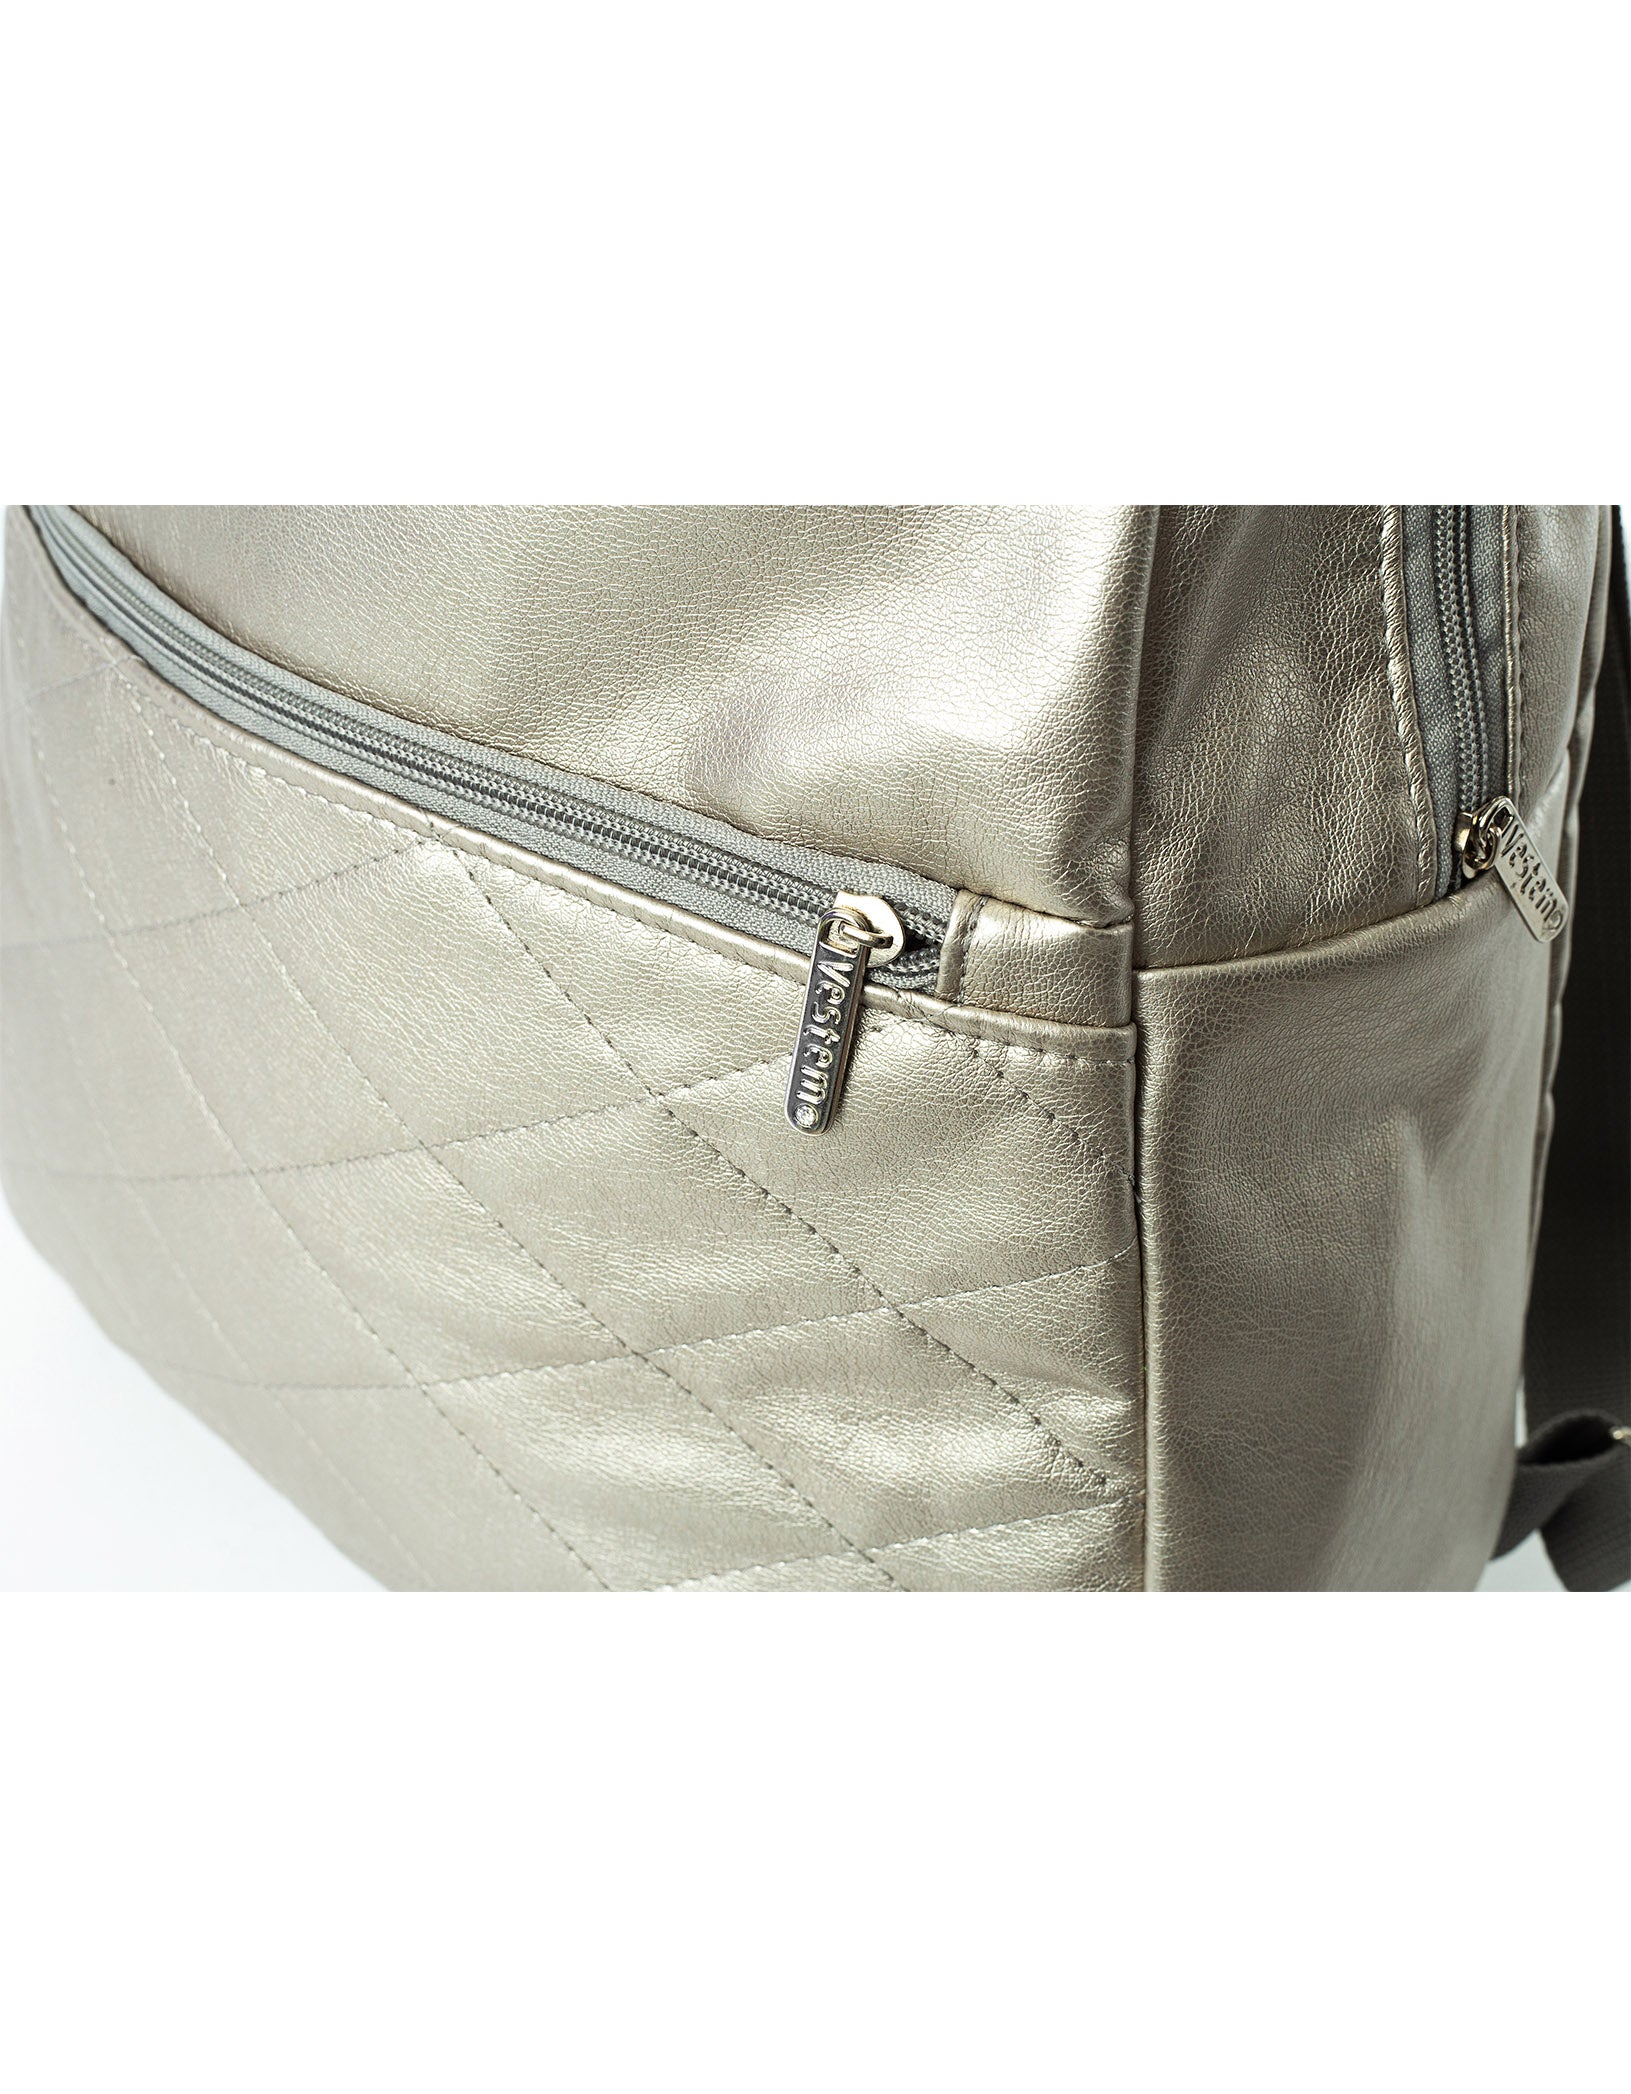 Vestem - Schoolbag Sapphire Silver Silver - MOC09.C0029